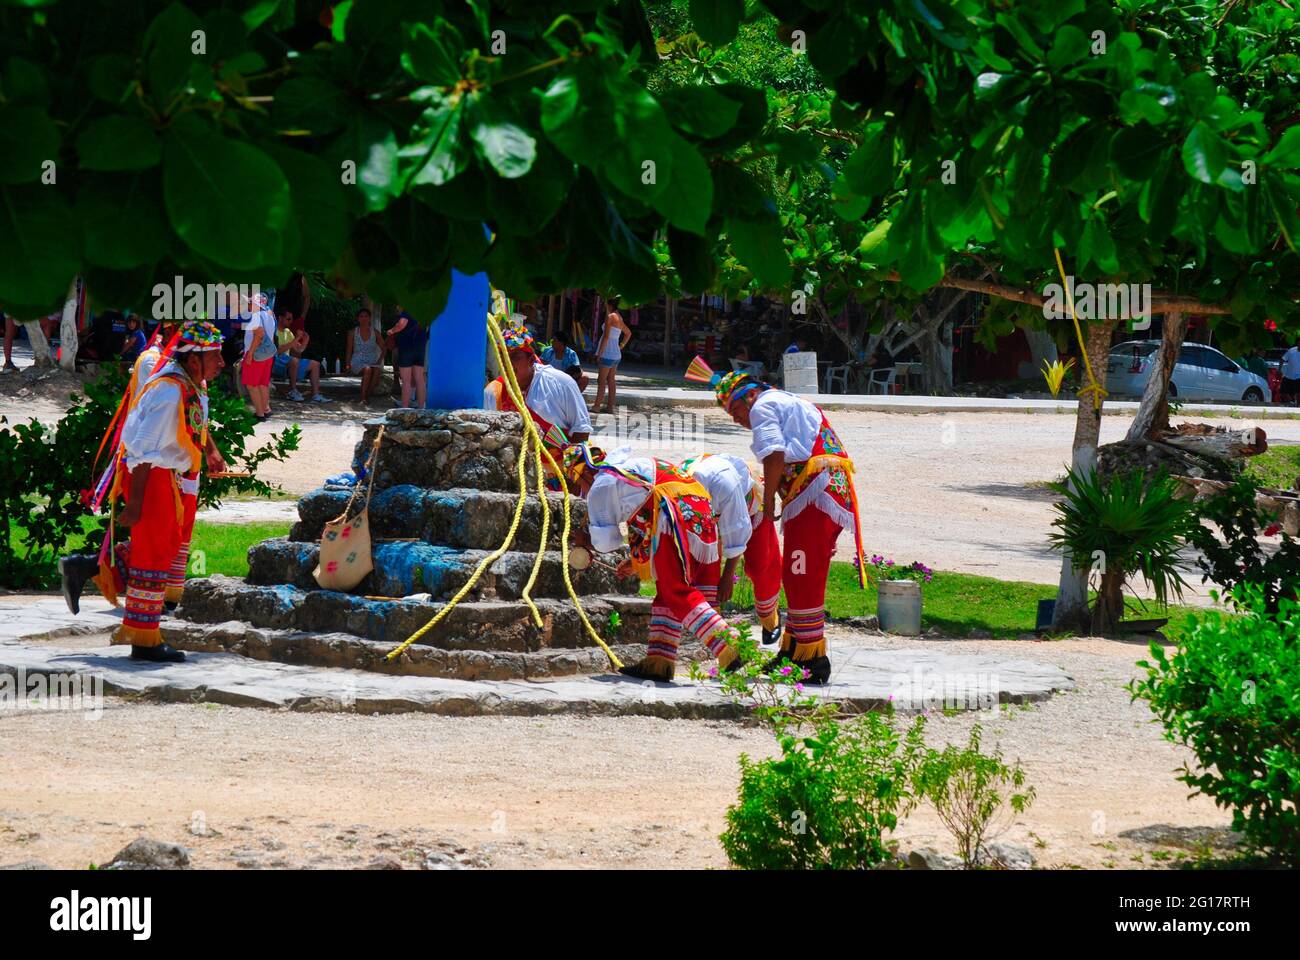 Mayan people dancing in ritual. Stock Photo